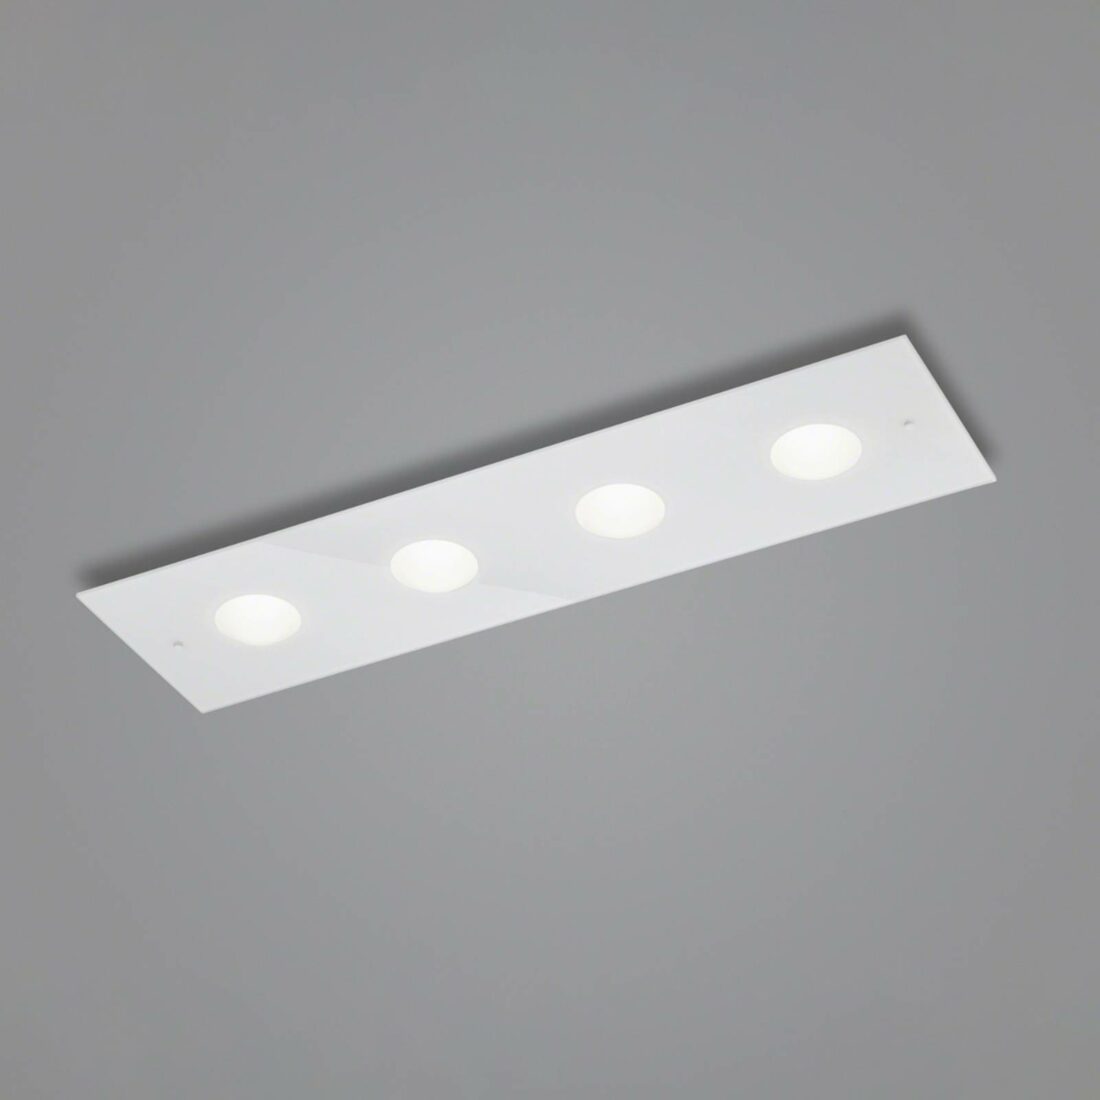 Helestra Nomi LED stropní světlo 75x21cm dim bílá